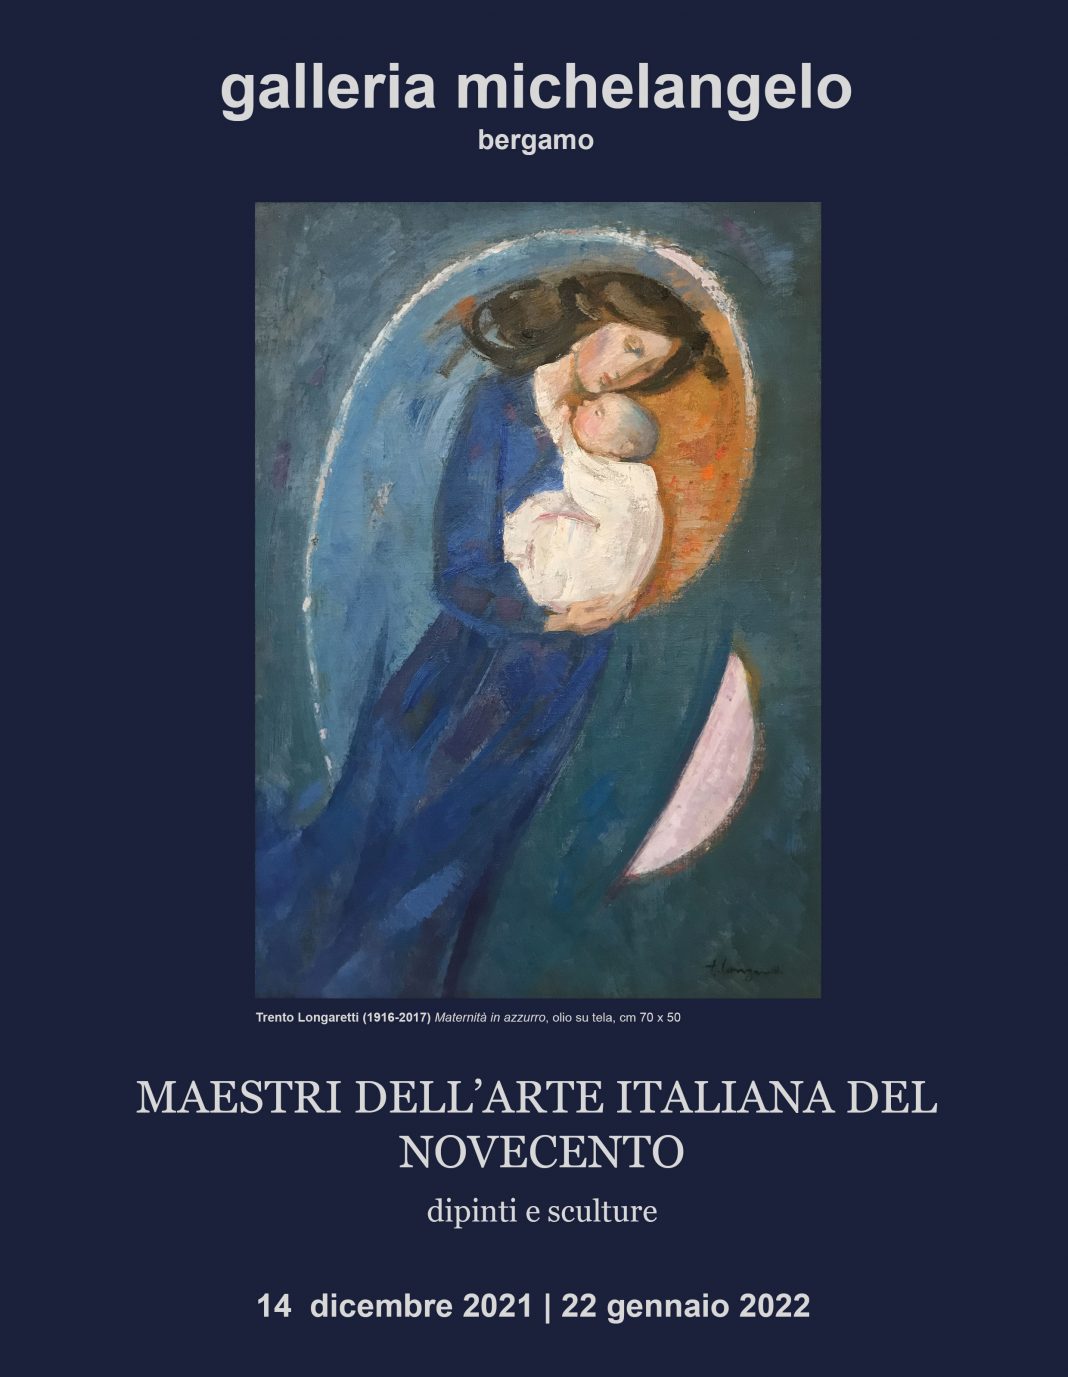 maestri dell’Arte Italiana del Novecento. Dipinti e Sculturehttps://www.exibart.com/repository/media/formidable/11/img/137/2021-Maestri-dellarte-italiana-del-novecento-galleria-michelangelo-web-1068x1377.jpg